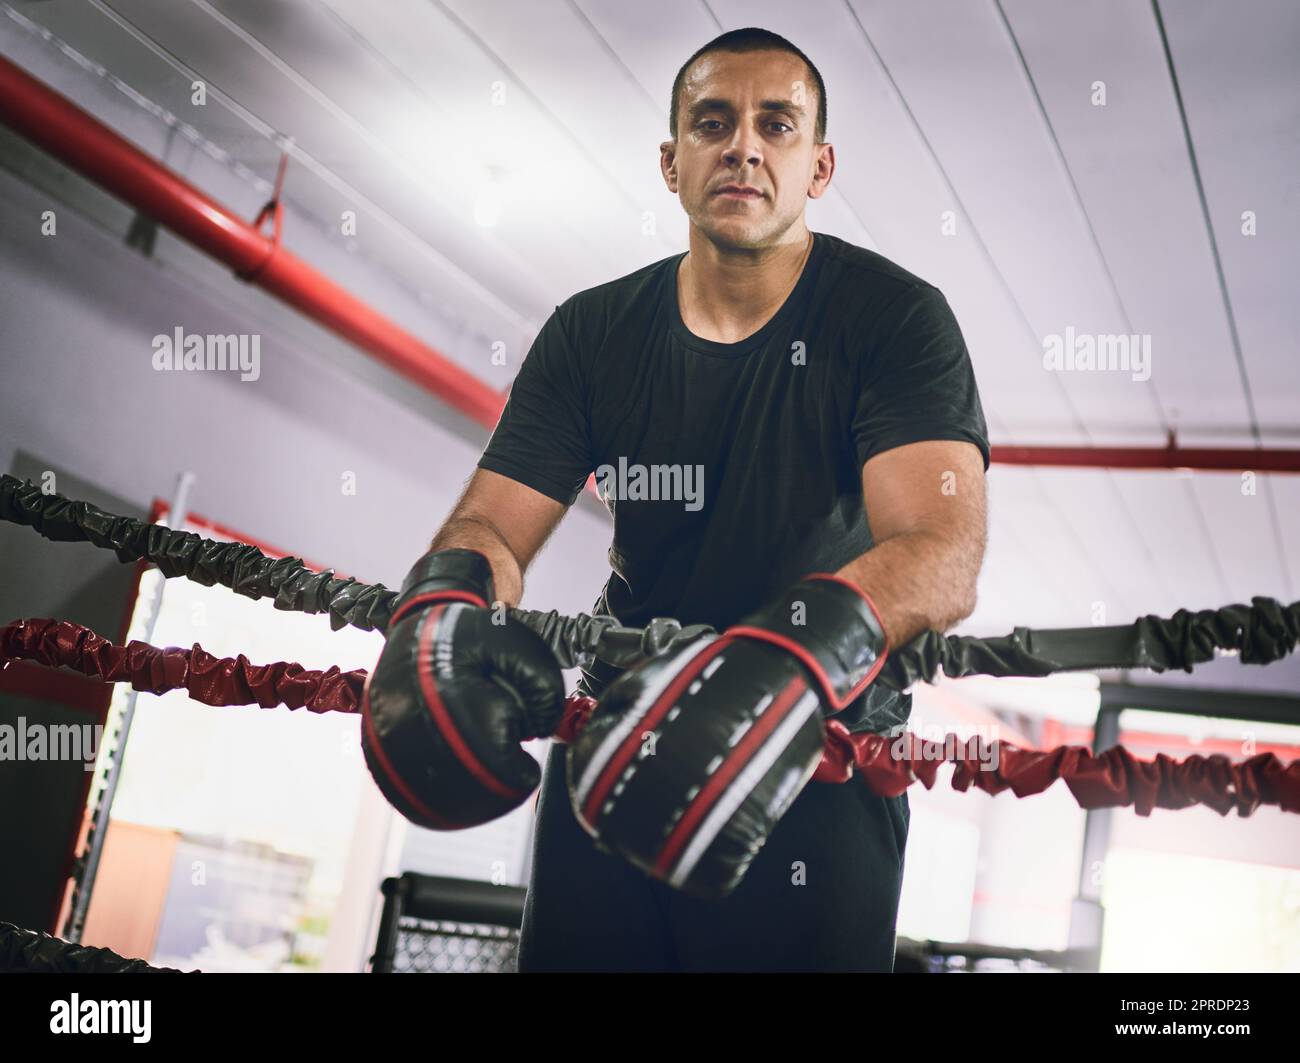 Er wartet auf einen Kampf. Porträt eines selbstbewussten jungen Boxers, der tagsüber in einem Fitnessstudio an Seilen in einem Boxring lehnt. Stockfoto